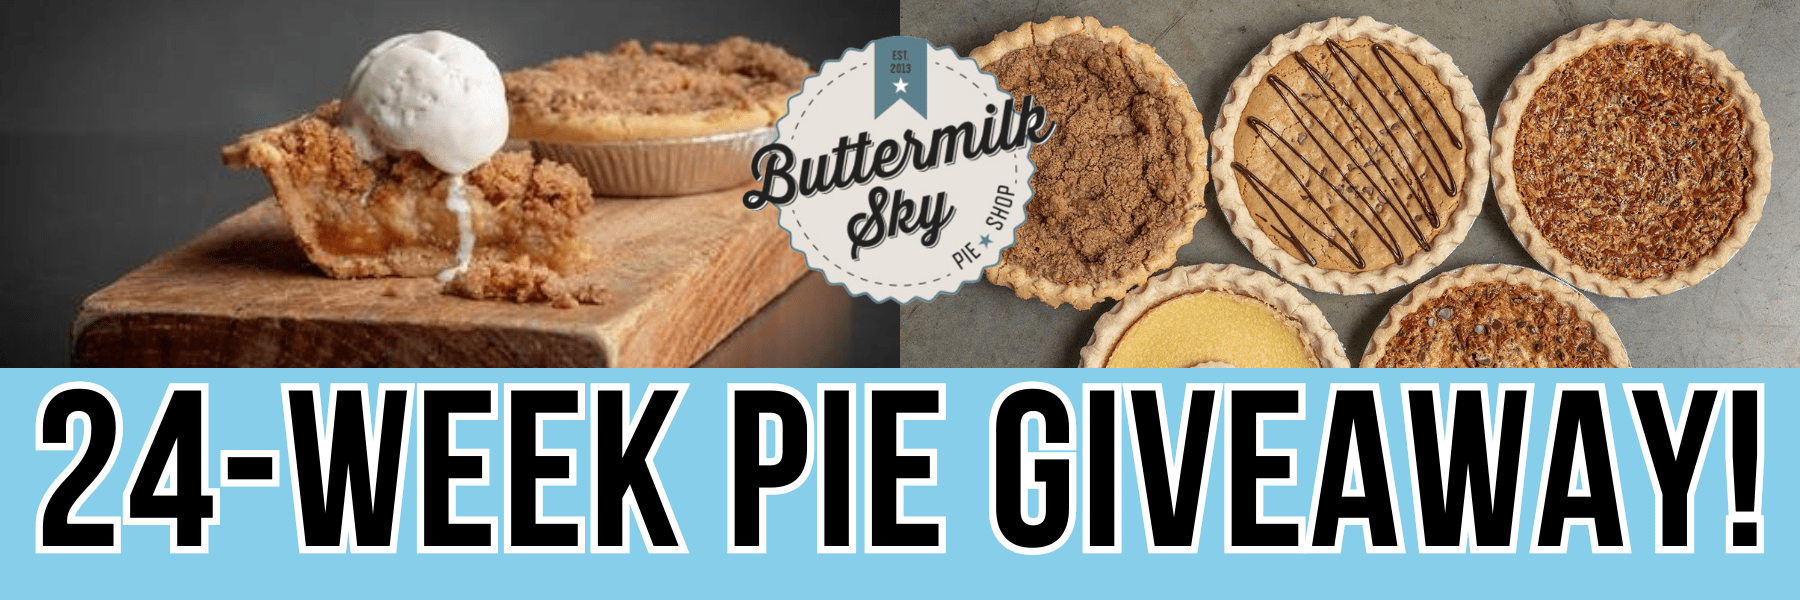 24-week pie giveaway!